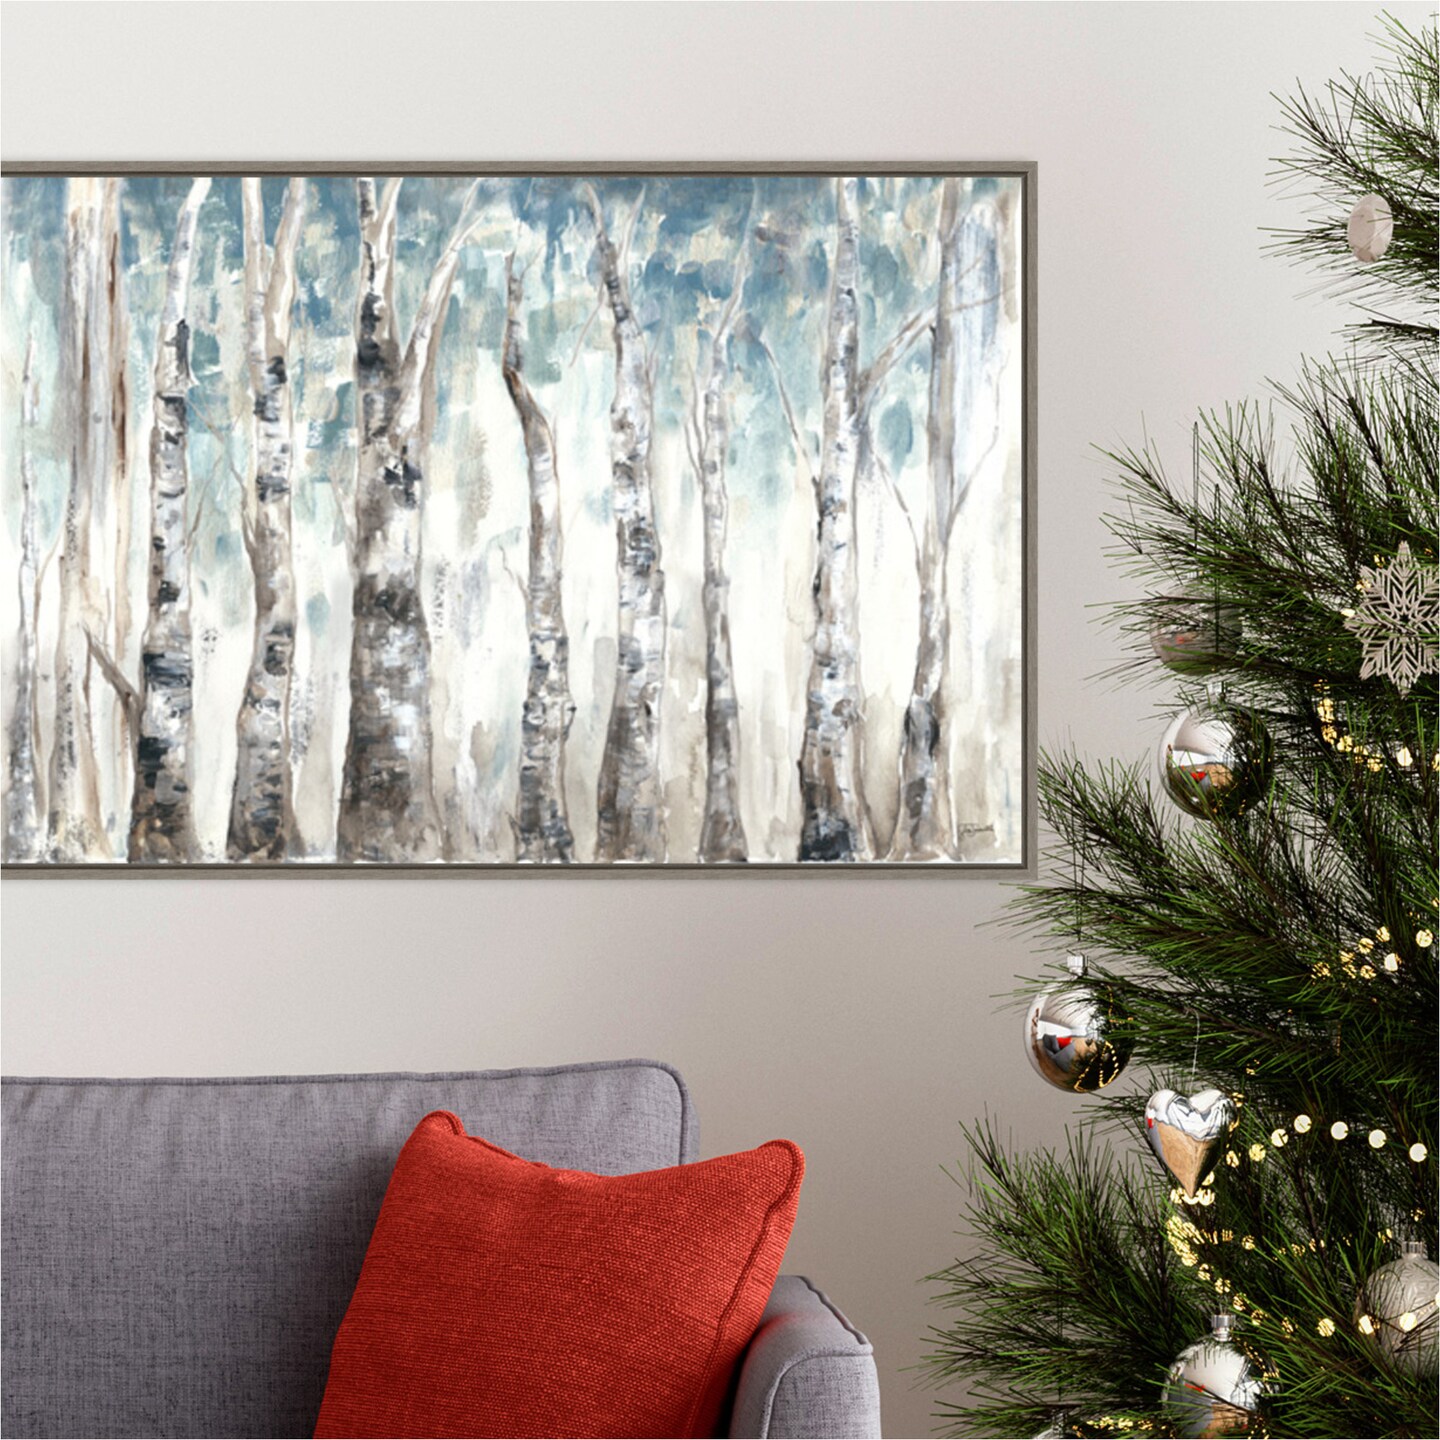 Winter Aspen Trunks Blue by Tre Sorelle Studios 33-in. W x 23-in. H. Canvas Wall Art Print Framed in Grey